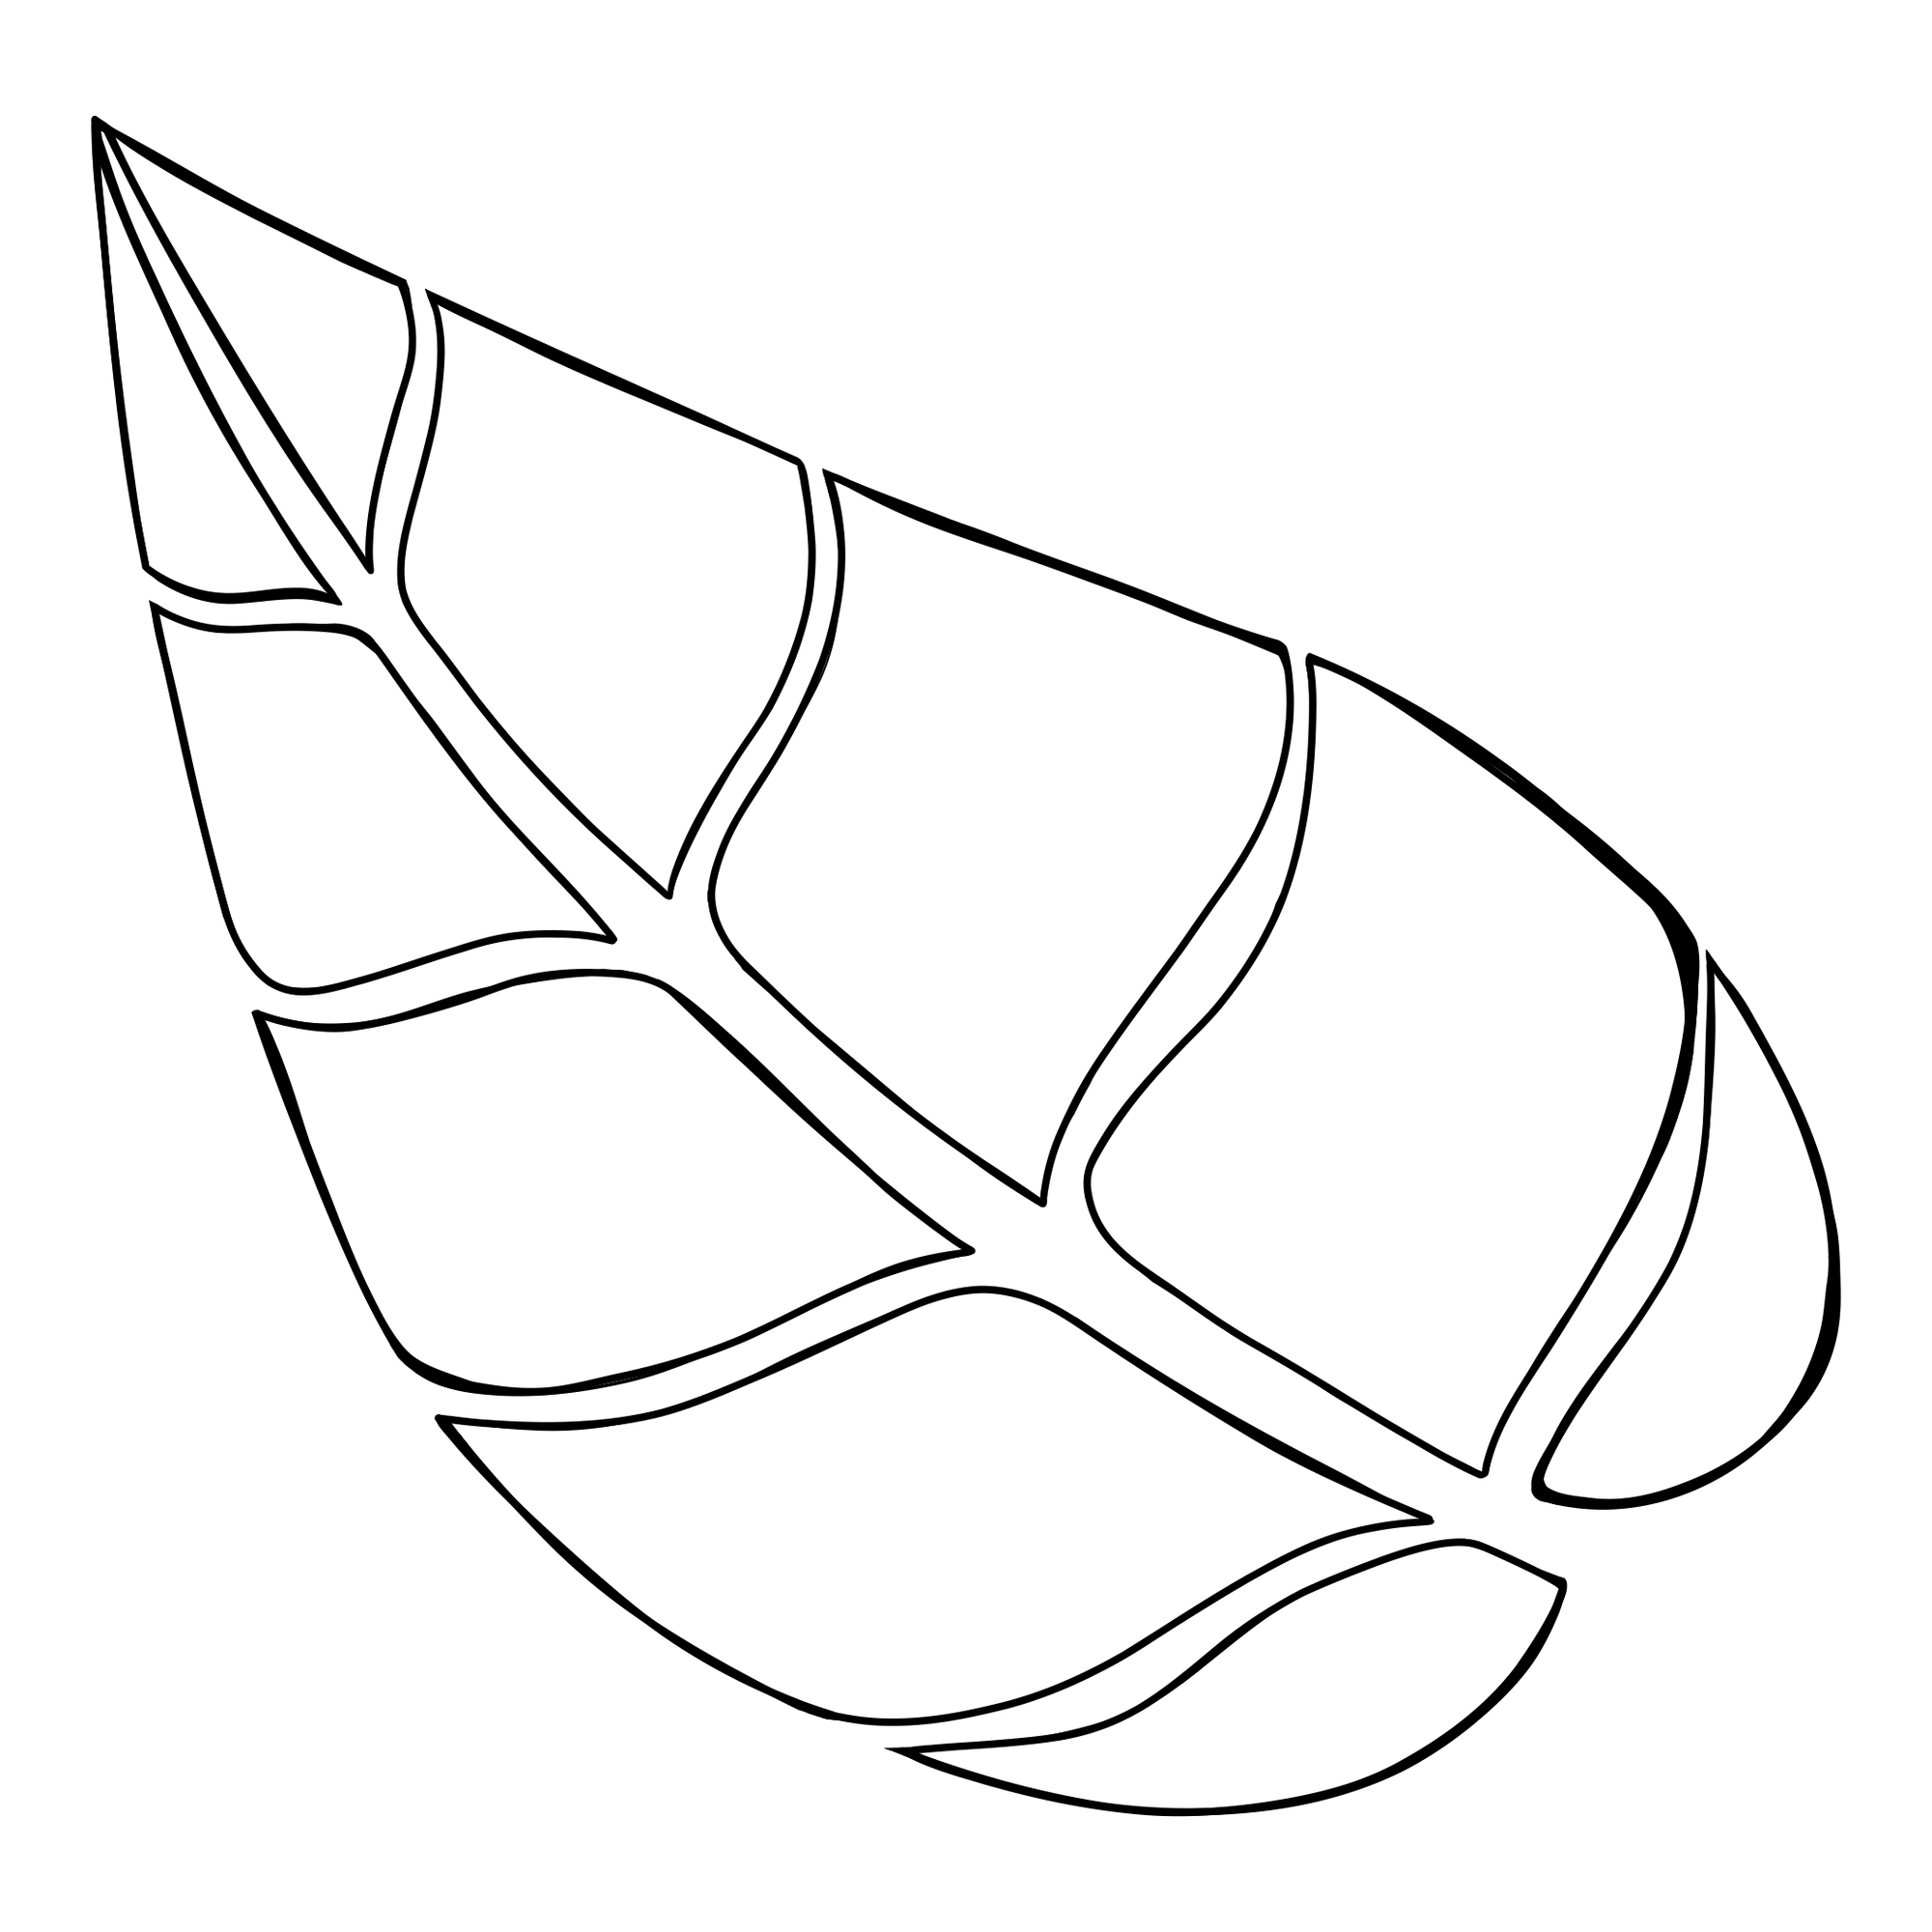 line drawing of leaf logo